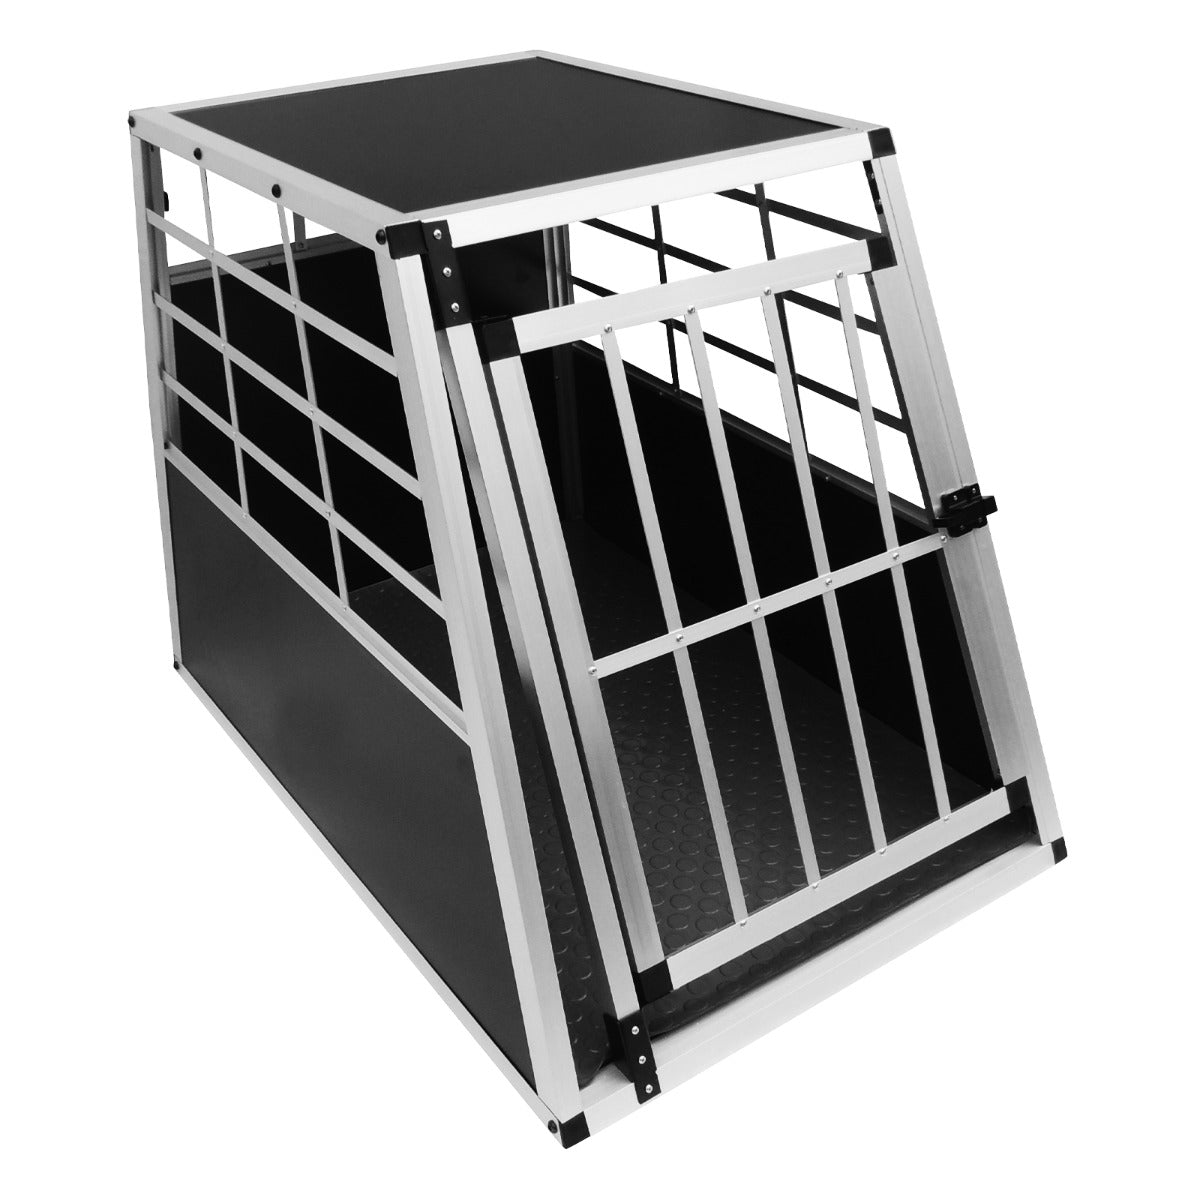 Cage de Transport pour Animaux Grand Format